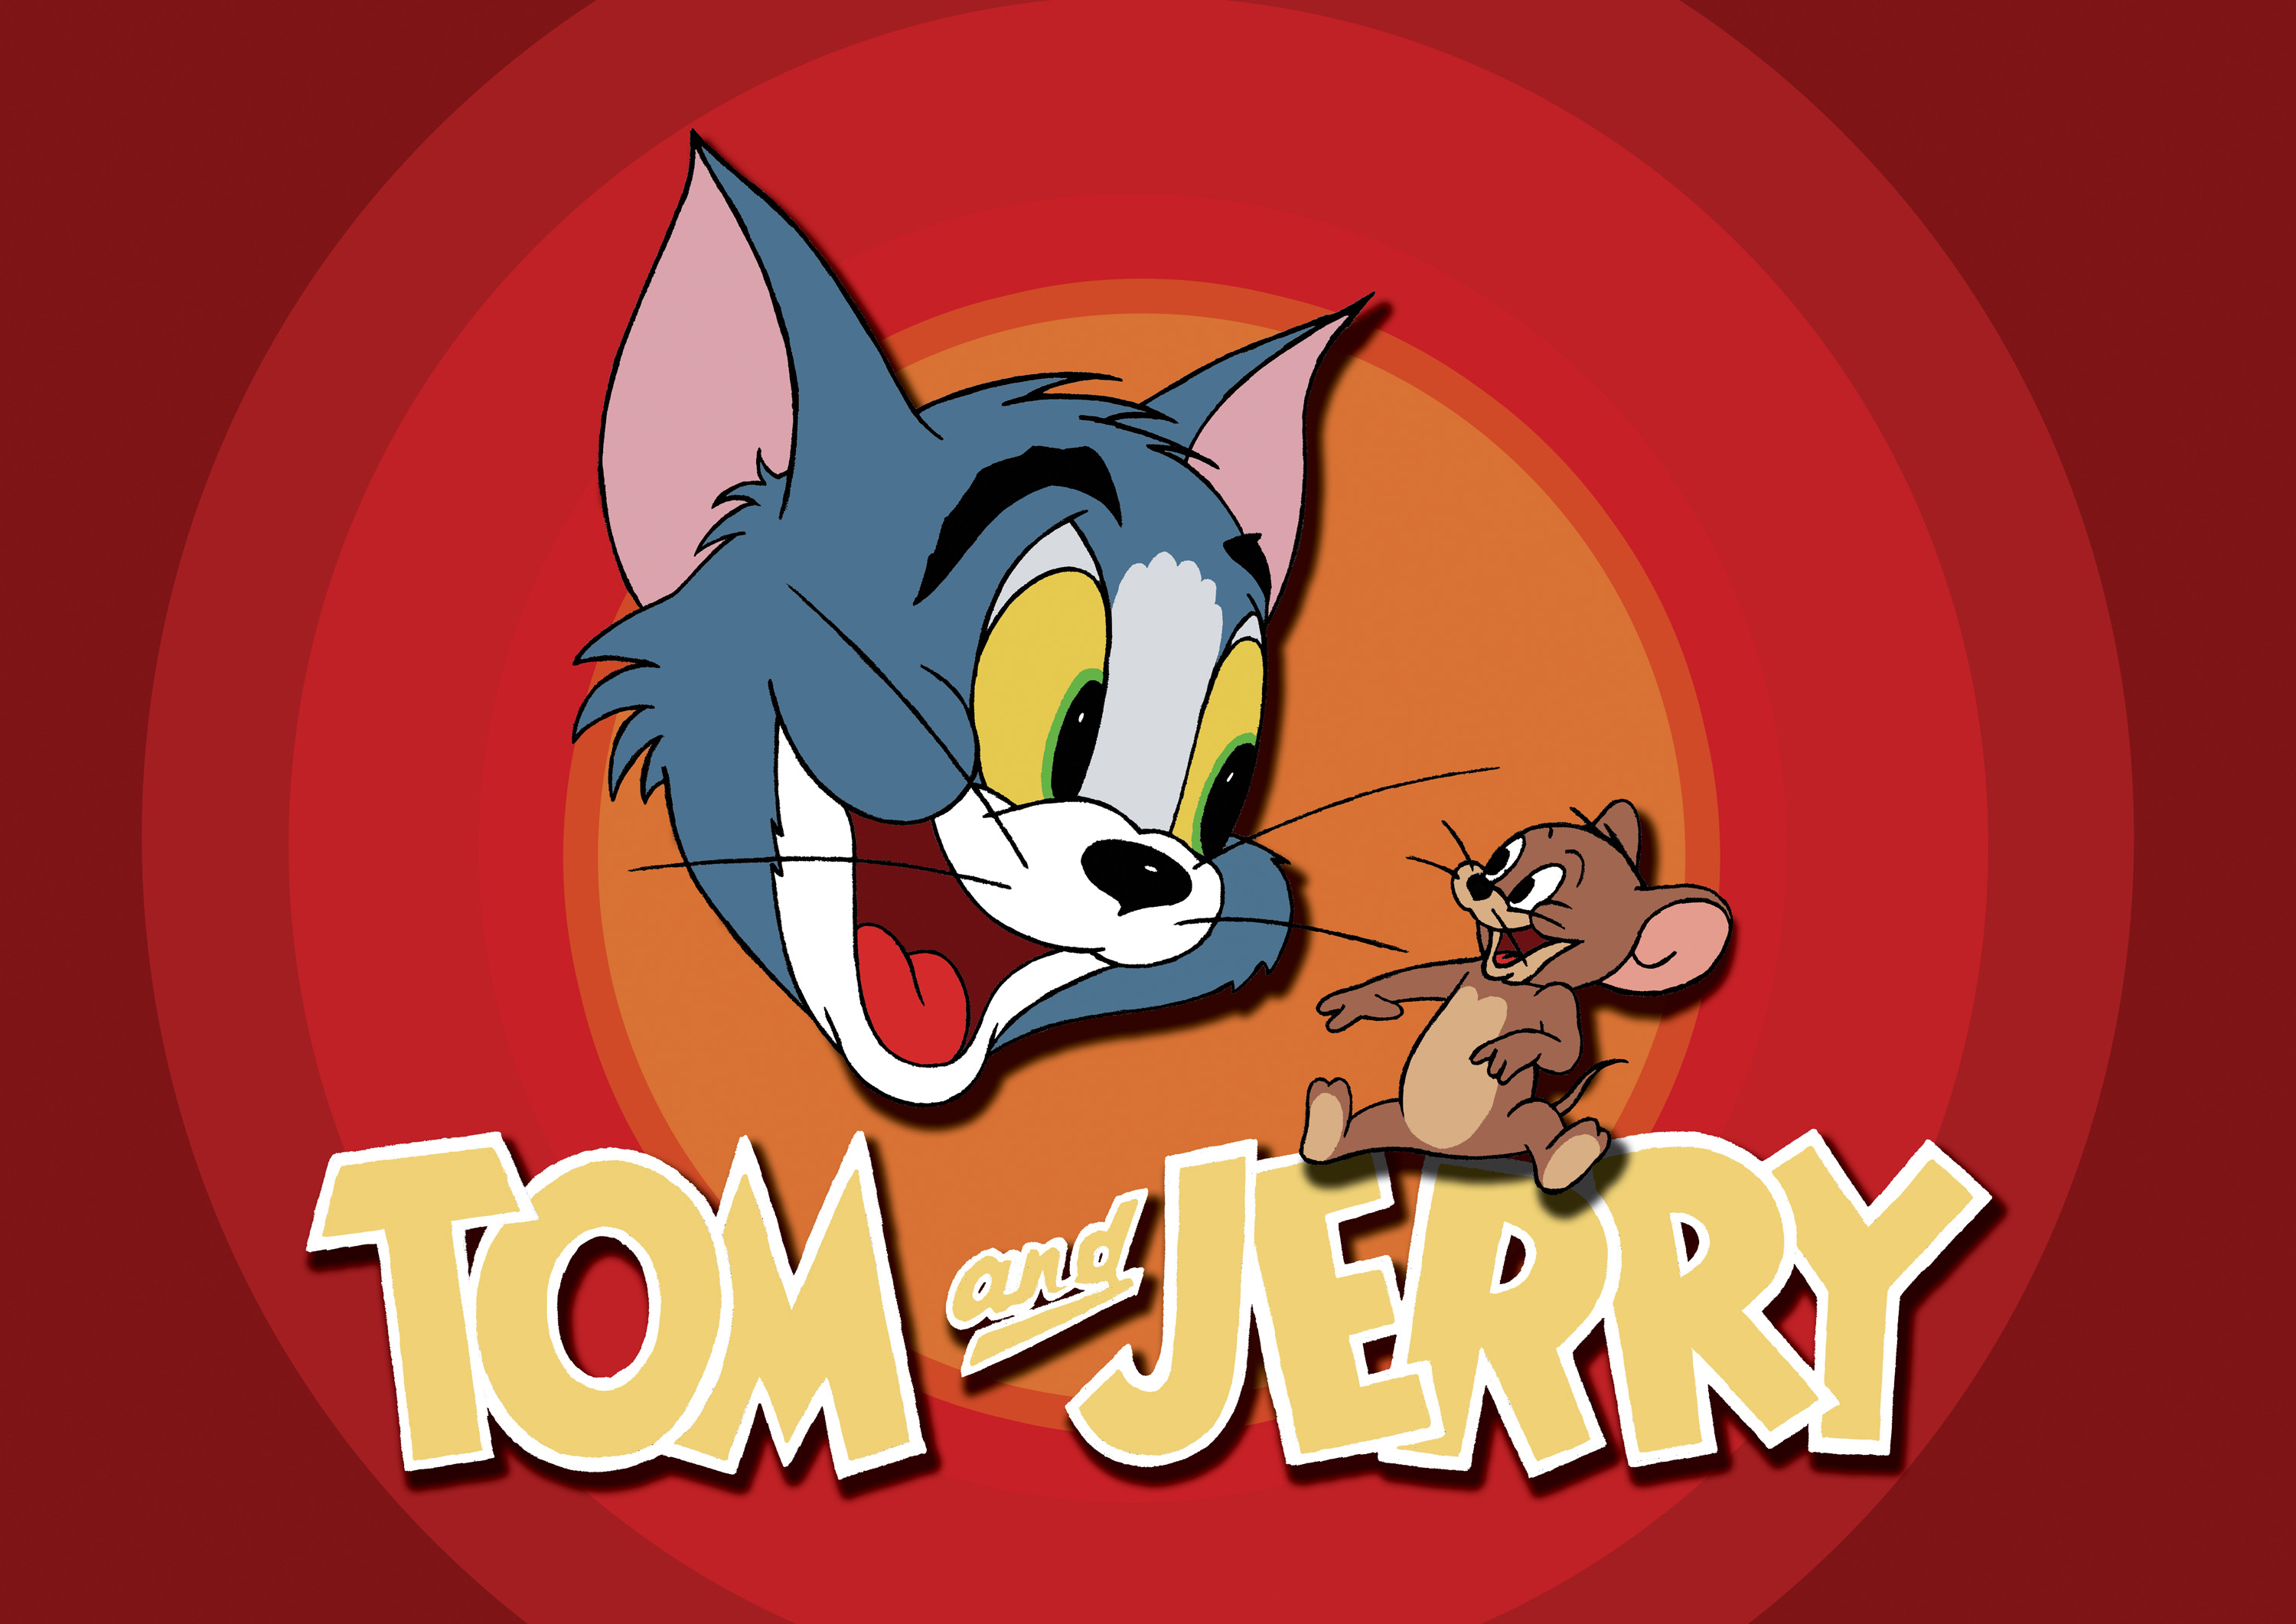 мультфильмы, Том и Джерри - обои на рабочий стол